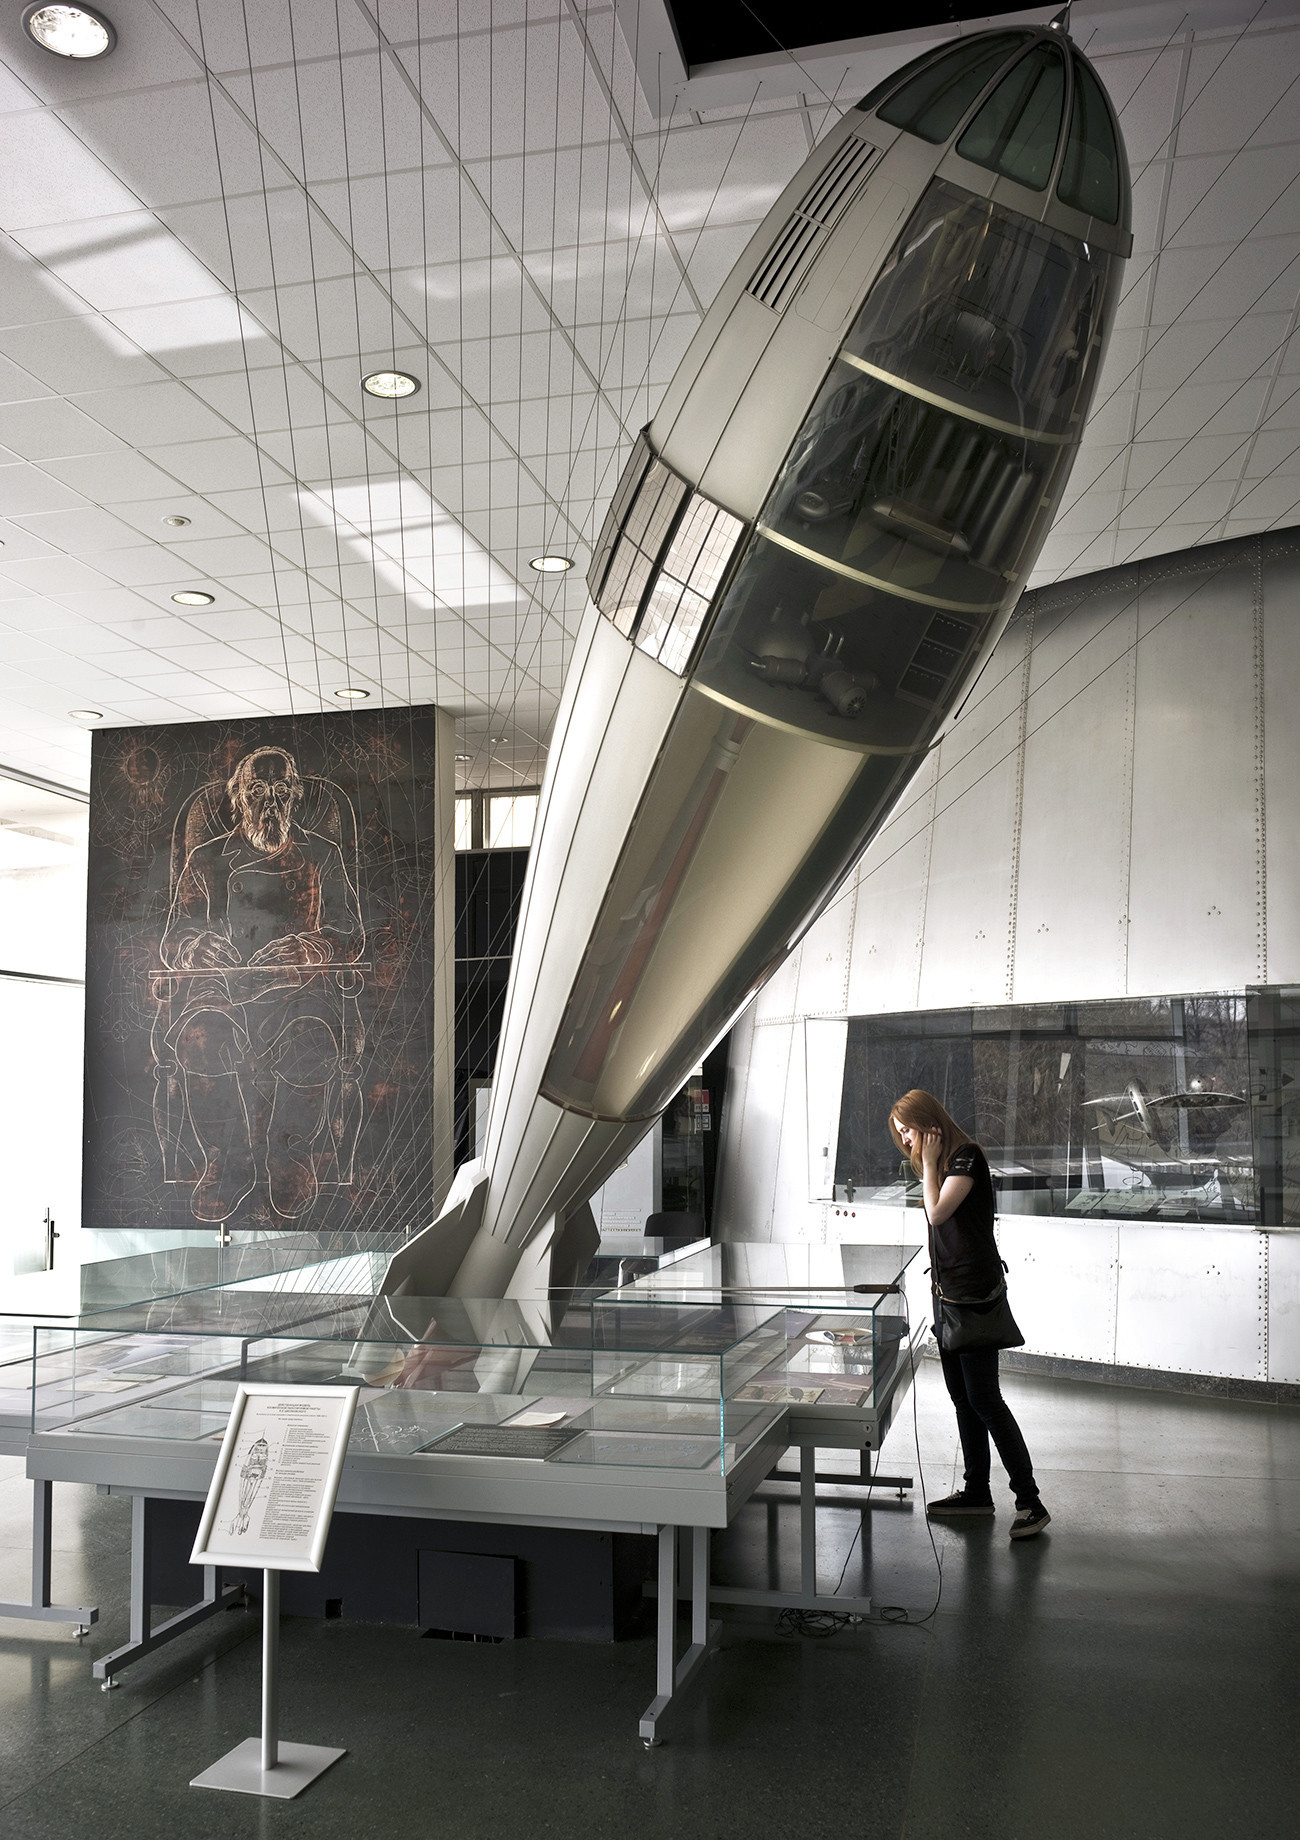 Delujoč model vesoljske rakete s človeško posadko Konstantina Ciolkovskega v Državnem muzeju za zgodovino kozmonavtike Ciolkovskega v Kalugi